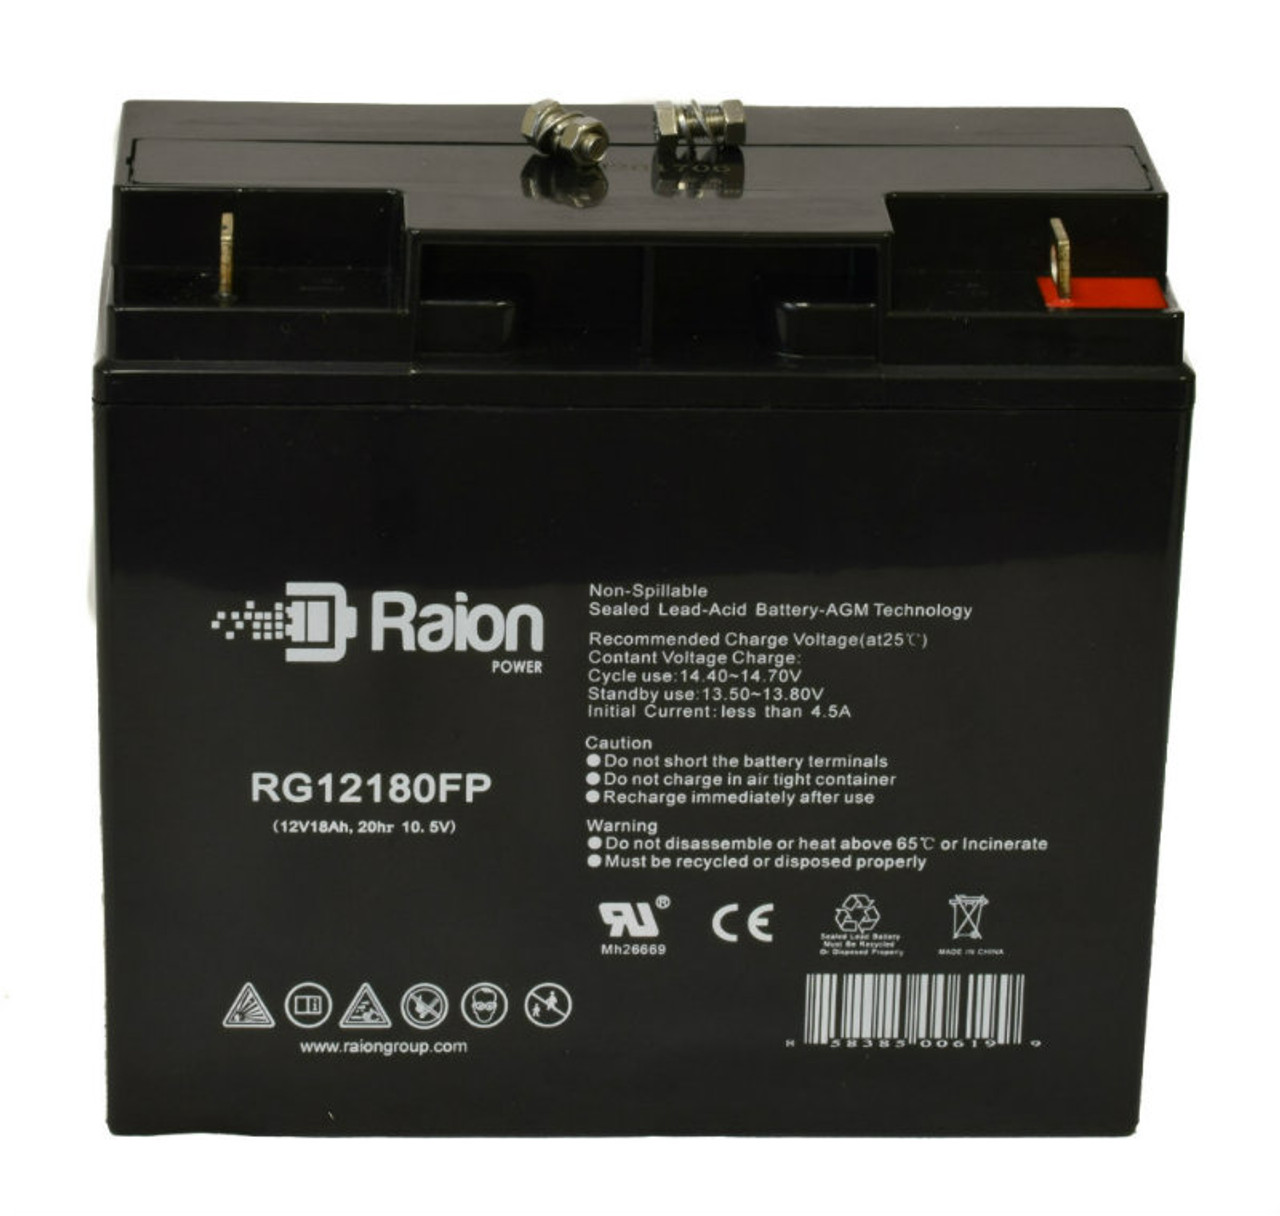 Raion Power RG12180FP 12V 18Ah Lead Acid Battery for IBT Technologies BT18-12HR